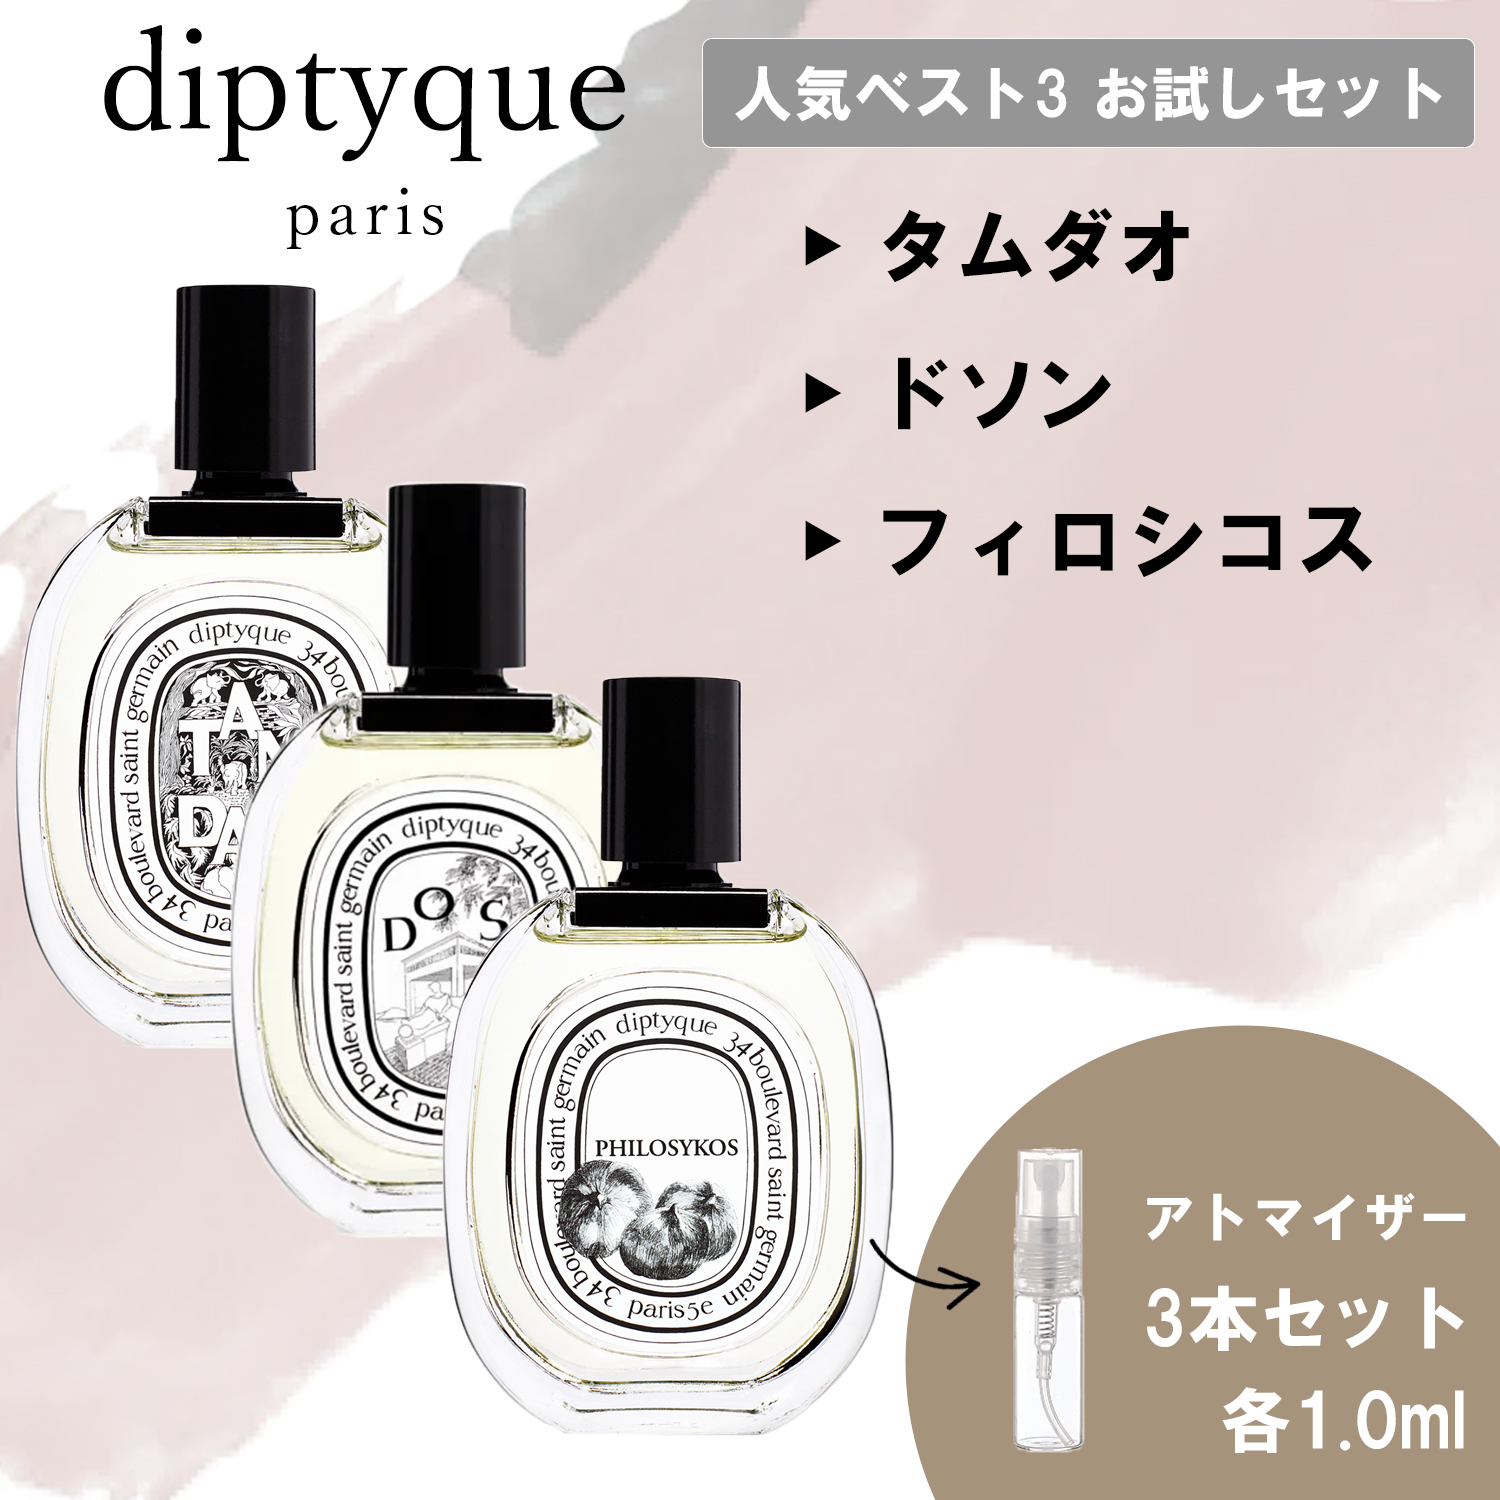 フィロシコス オードトワレ 10ml 香水 ディプティック3 - 香水(ユニ